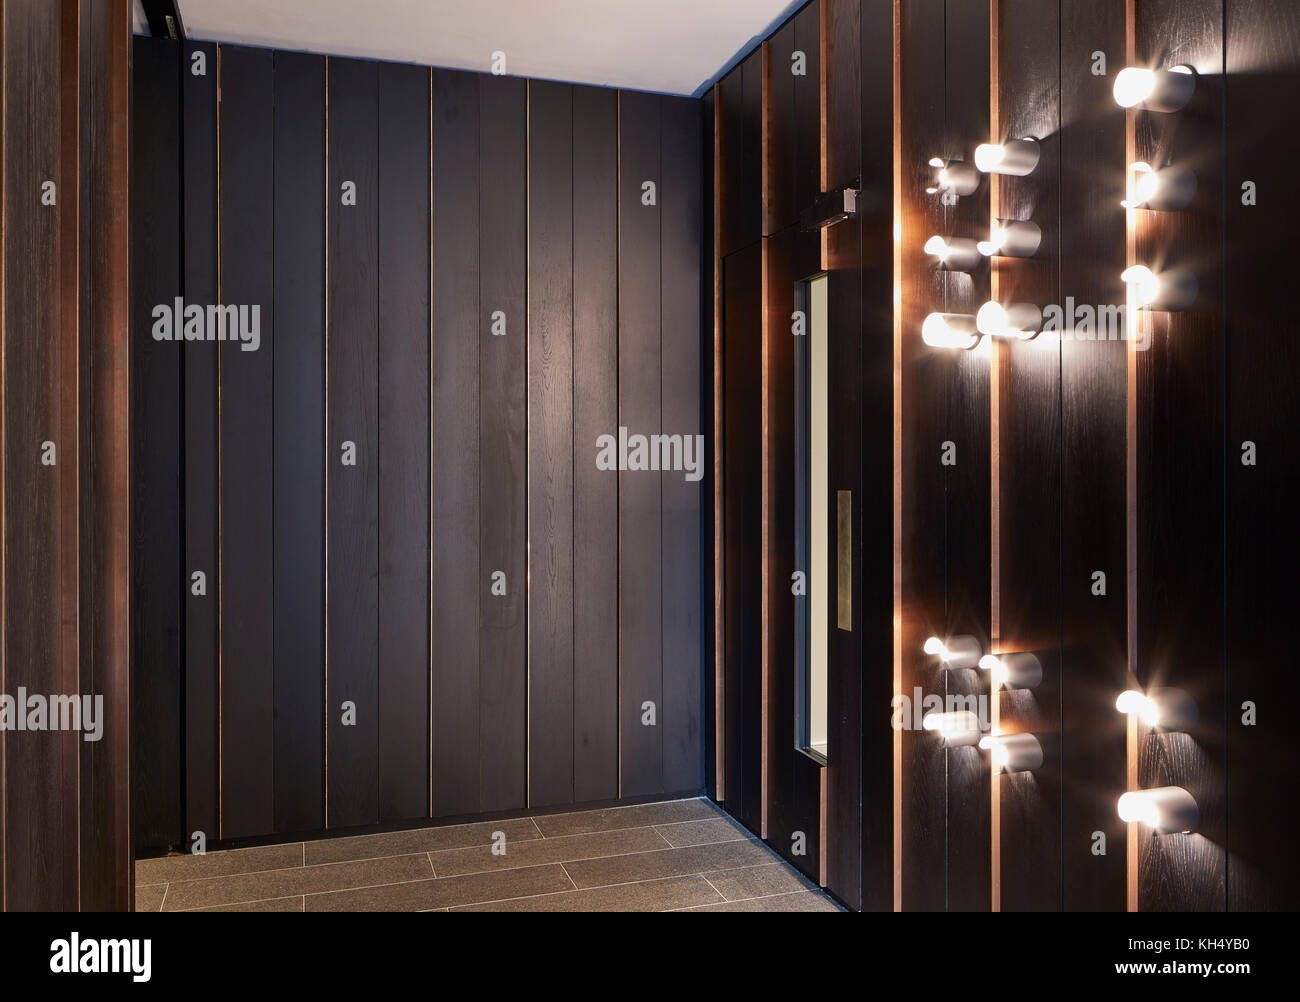 Holztäfelung und Beleuchtungskörper in Gebäude Flur. 55 Victoria Street, London, Vereinigtes Königreich. Architekt: Steif+Trevillion Architekten, 2017. Stockfoto